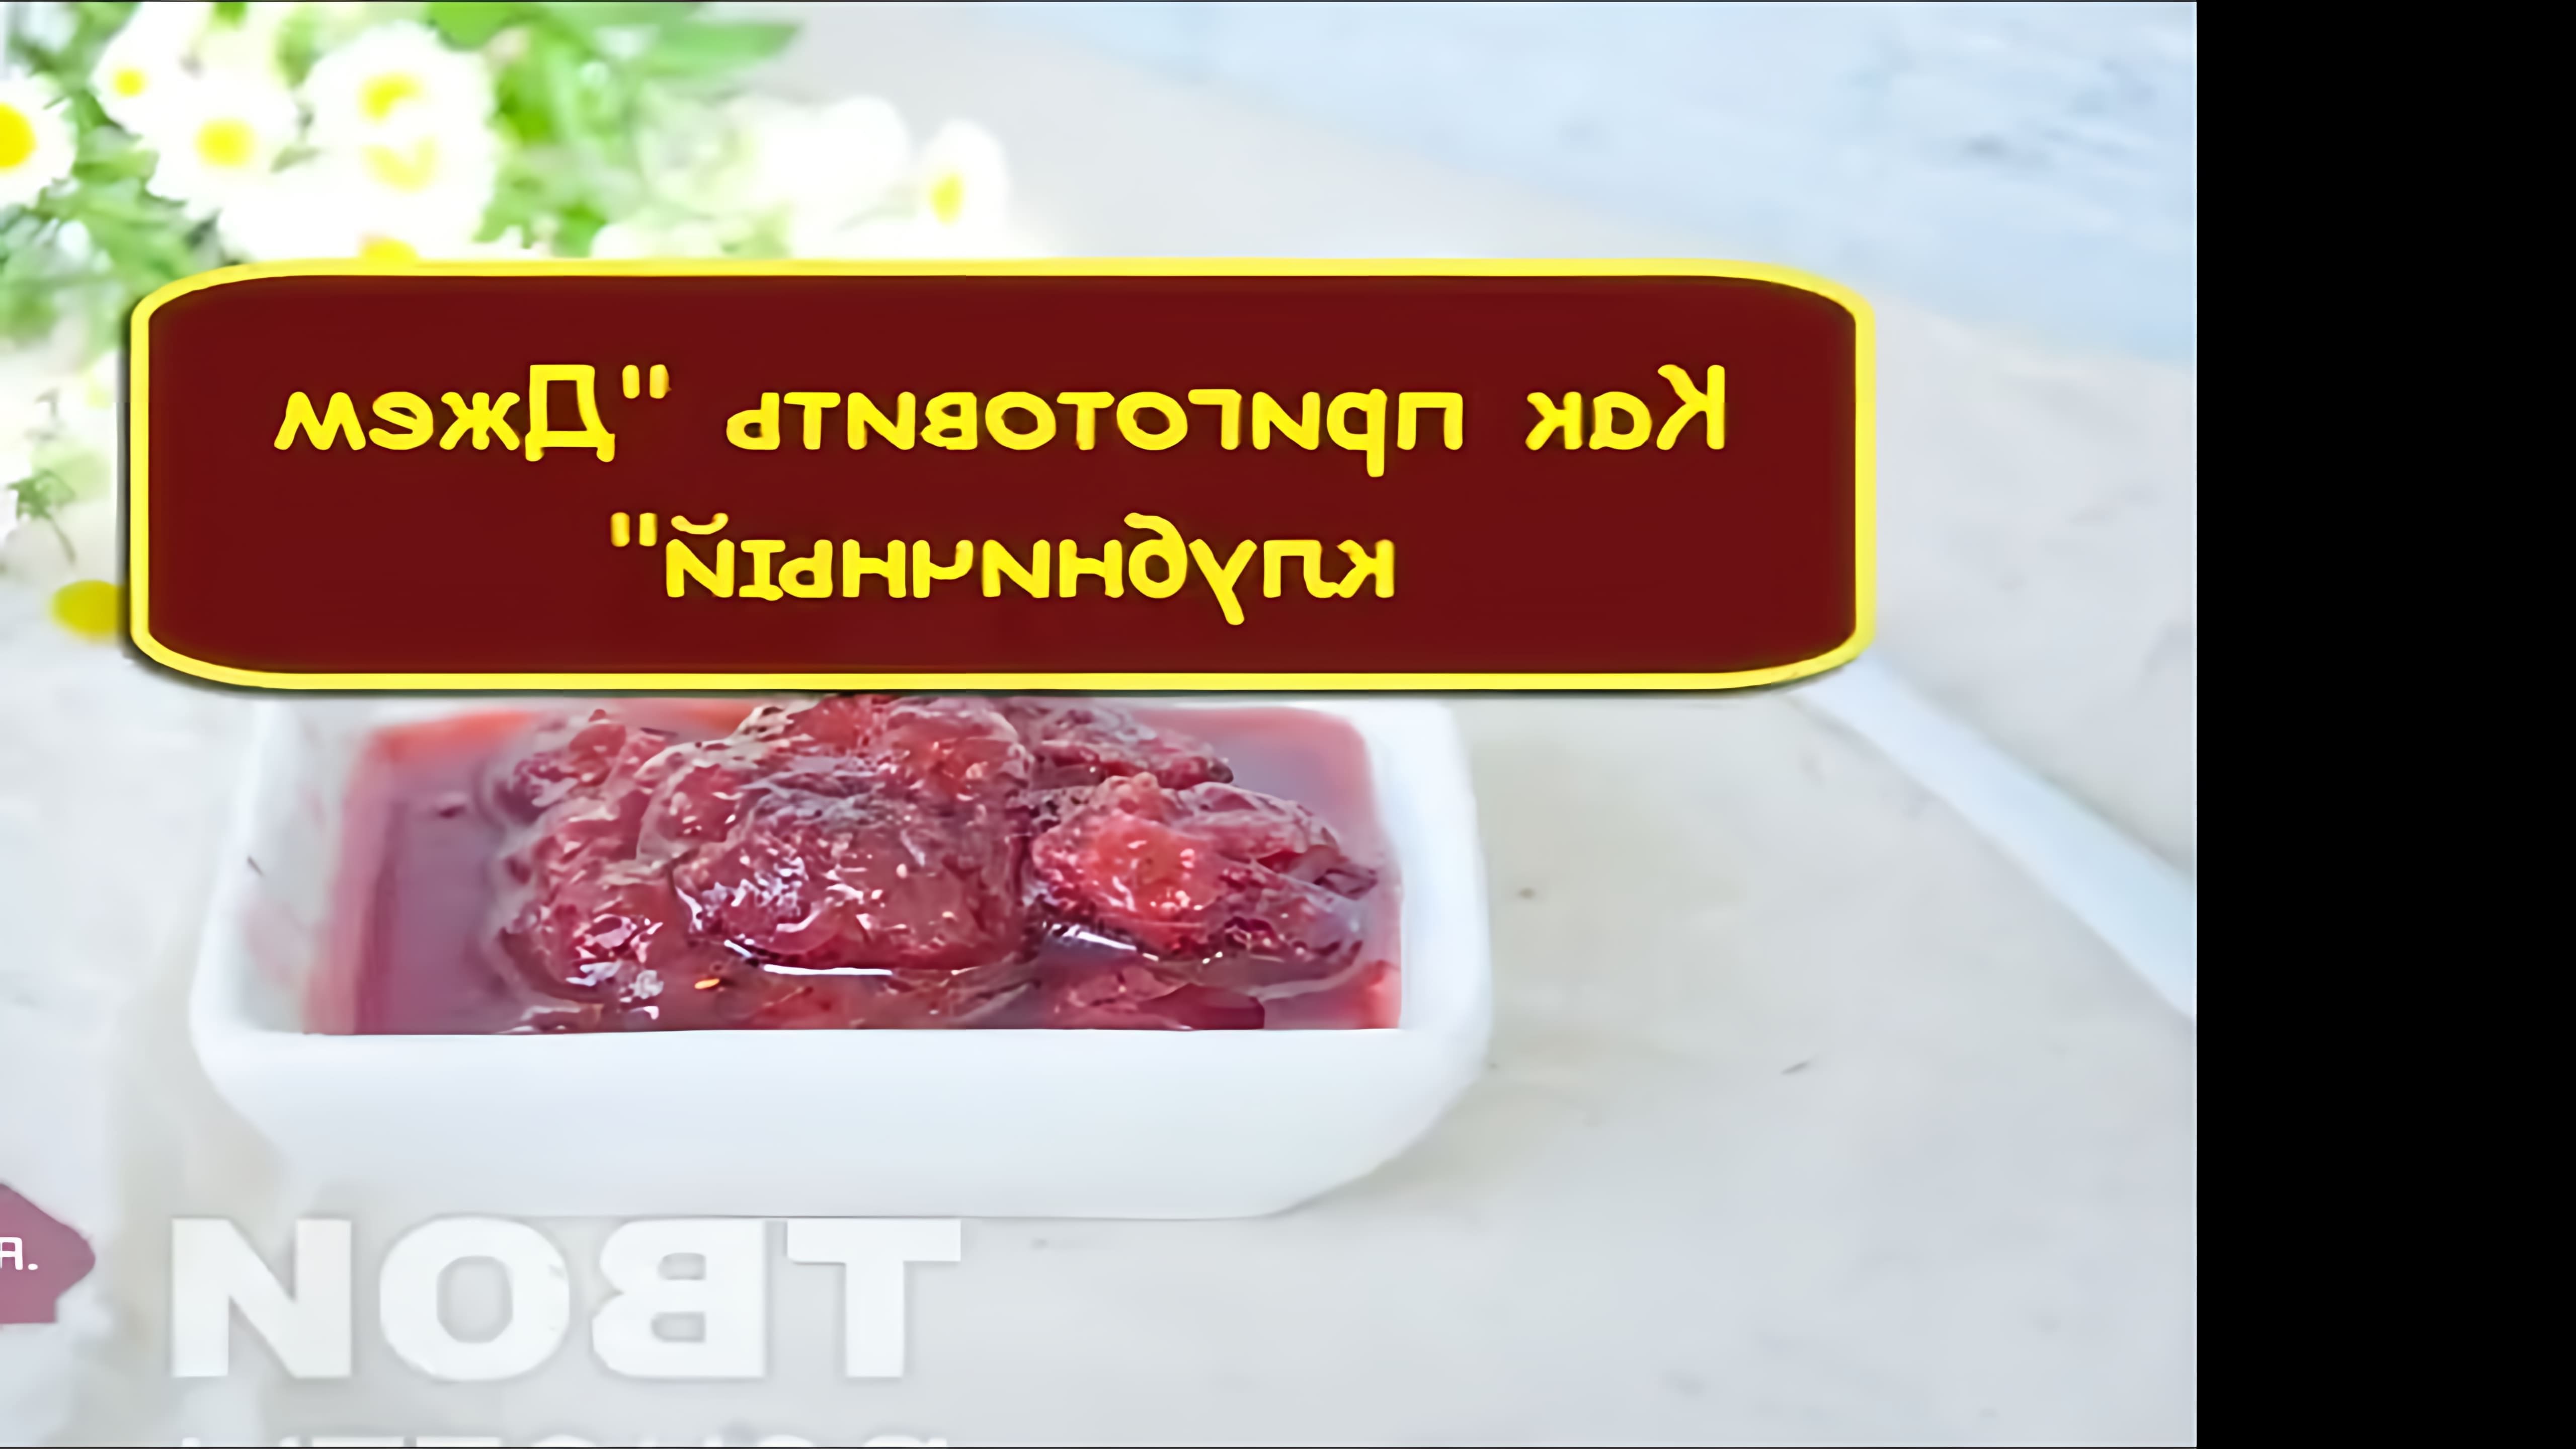 В этом видео-ролике будет показан простой и быстрый рецепт приготовления клубничного джема с ярким летним вкусом